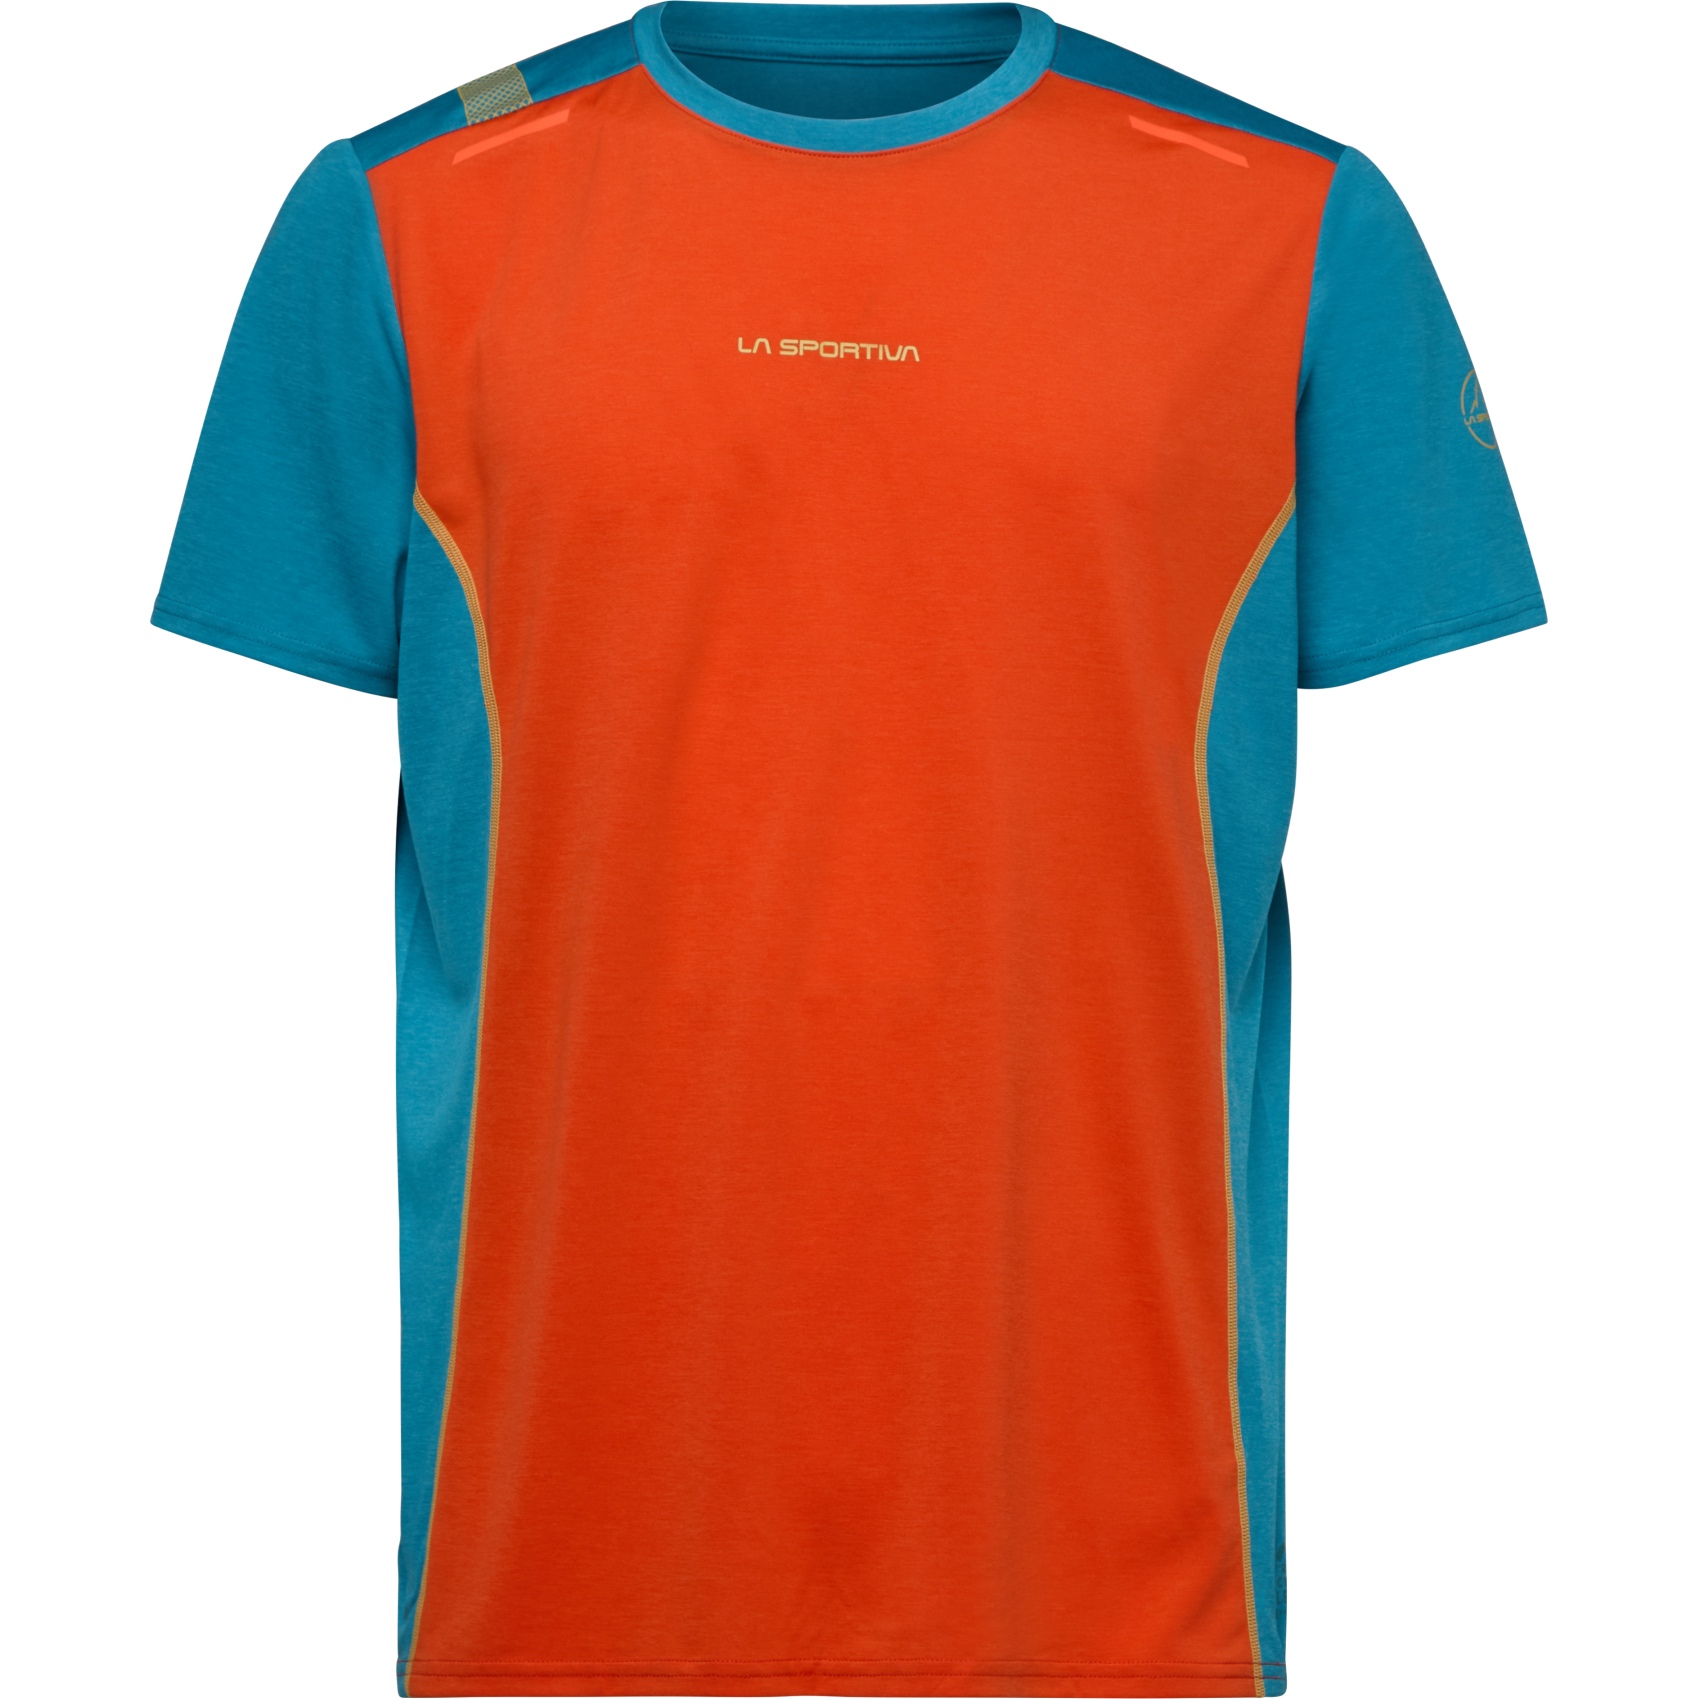 Picture of La Sportiva Tracer T-Shirt Men - Cherry Tomato/Tropic Blue